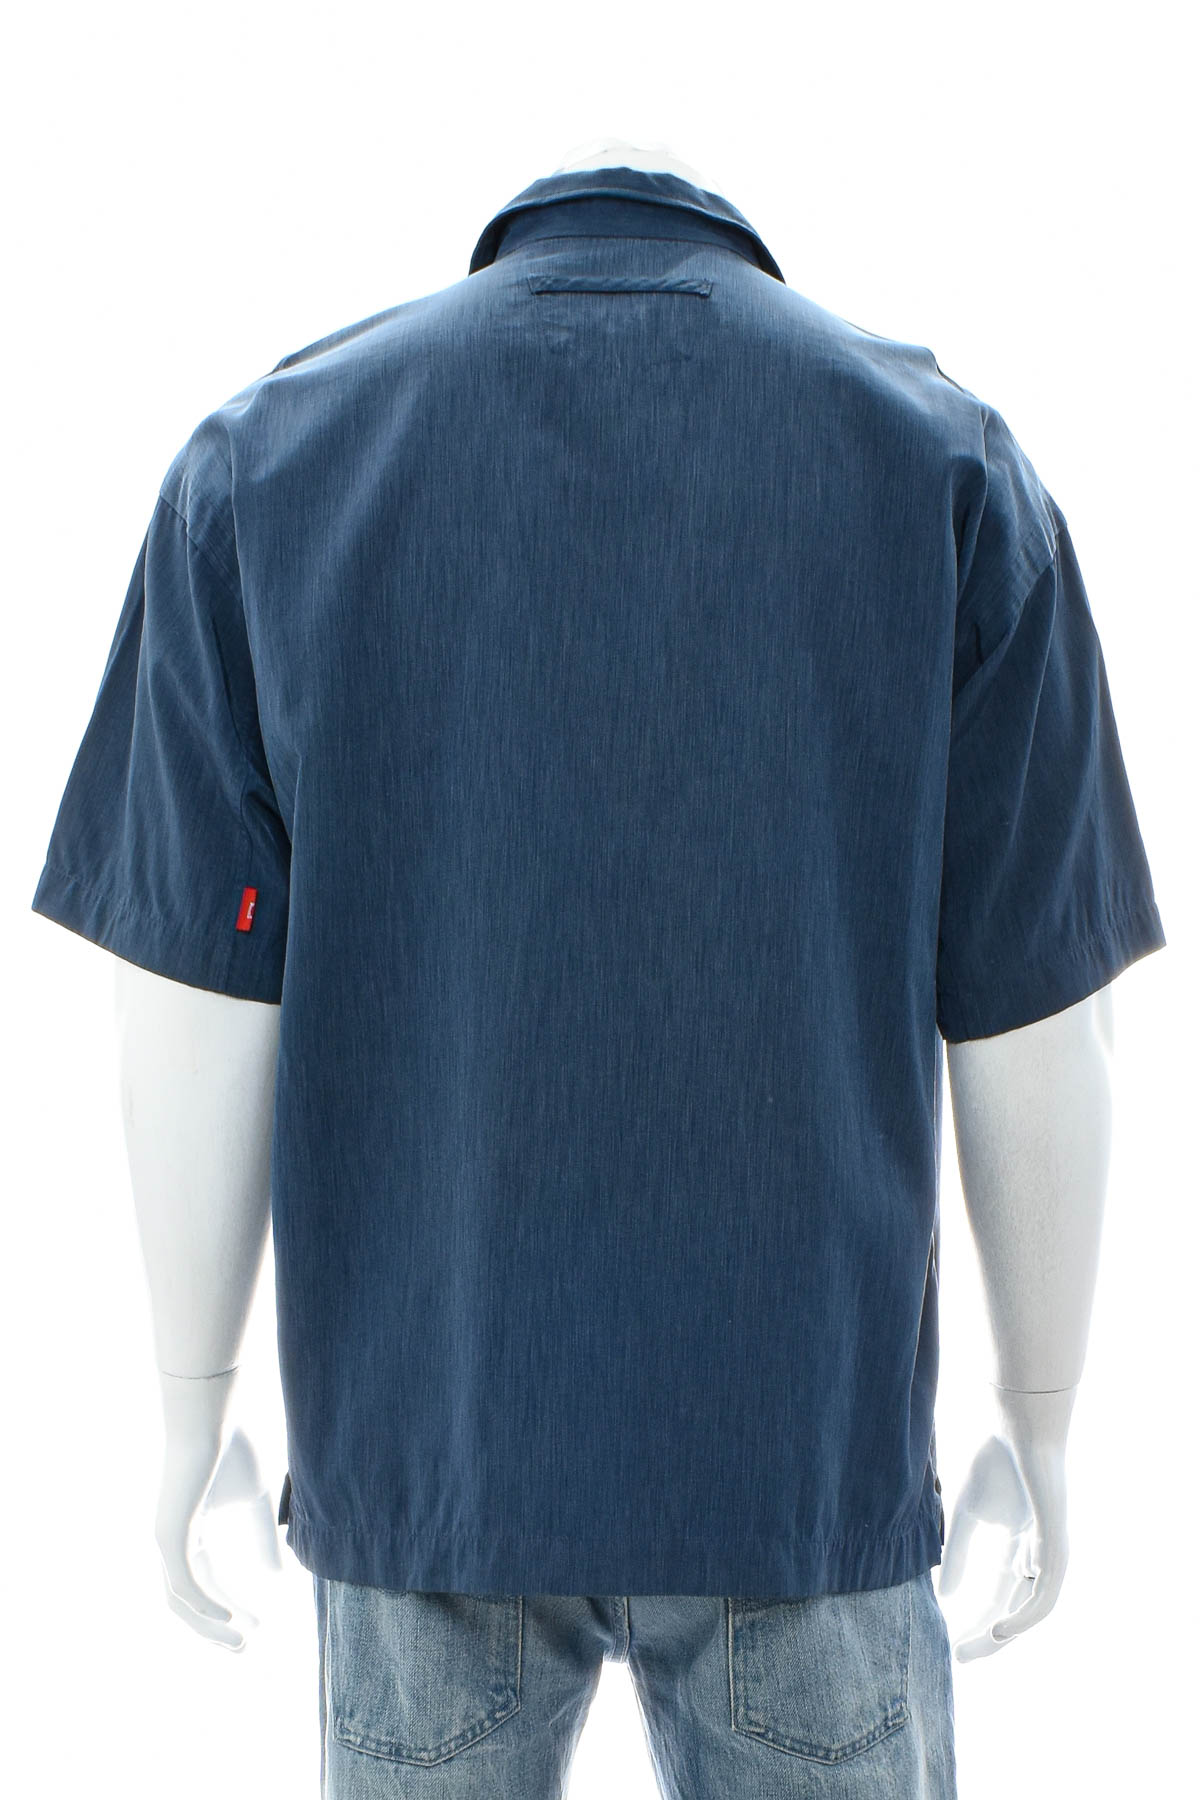 Ανδρικό πουκάμισο - Signum - 1